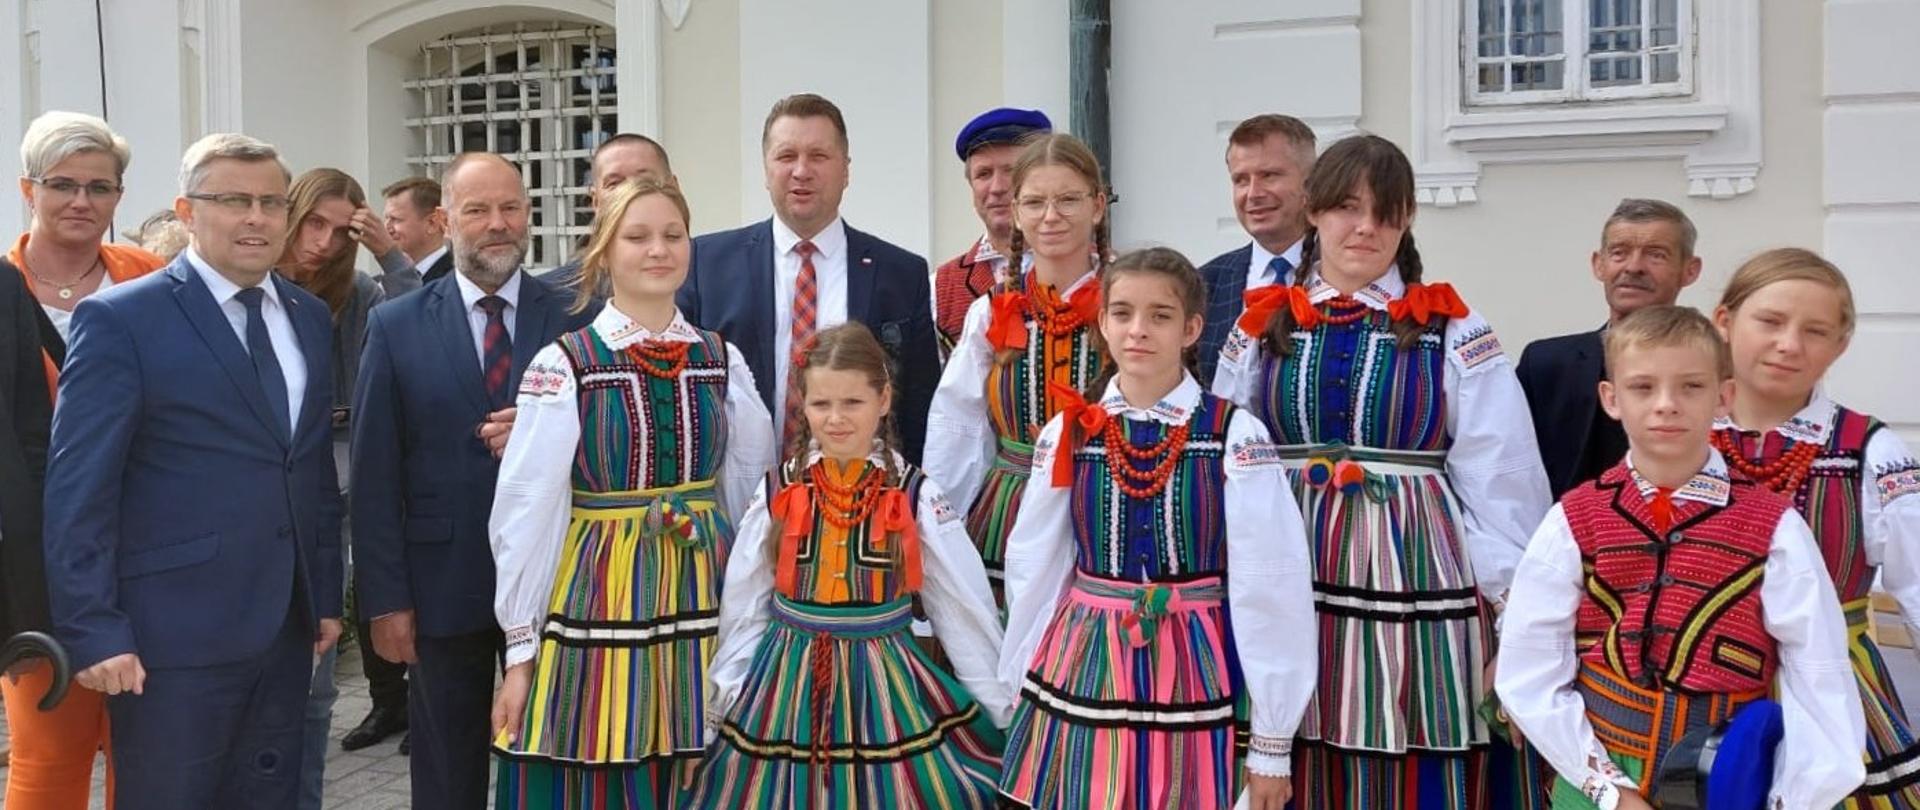 Grupa dzieci w ludowych strojach, za nimi minister Czarnek w otoczeniu ludzi w garniturach.